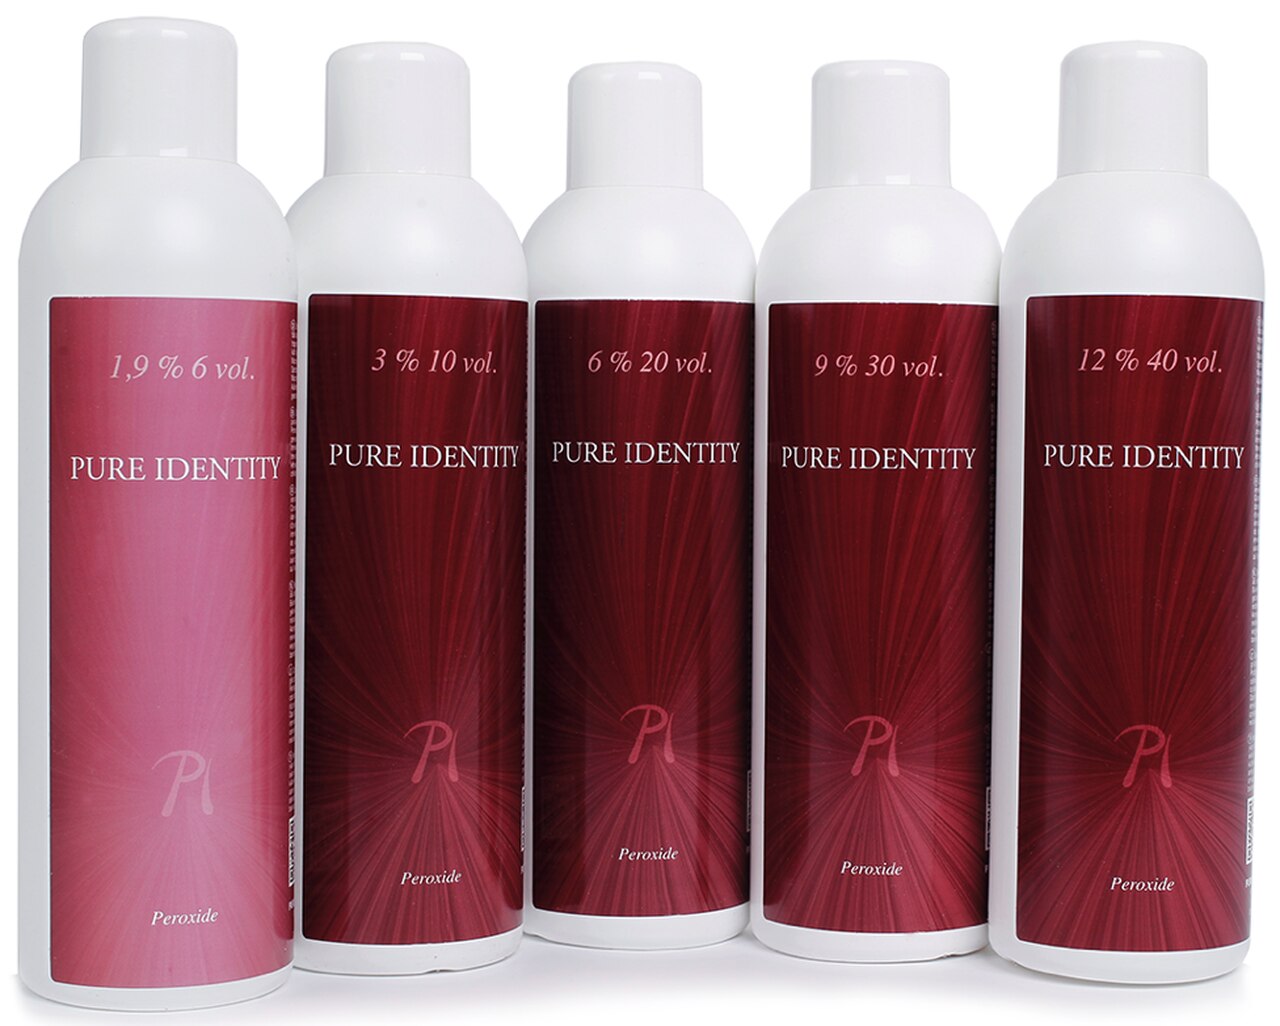 Pure Identity Creme Peroxide 1.9% 6 vol 950ml